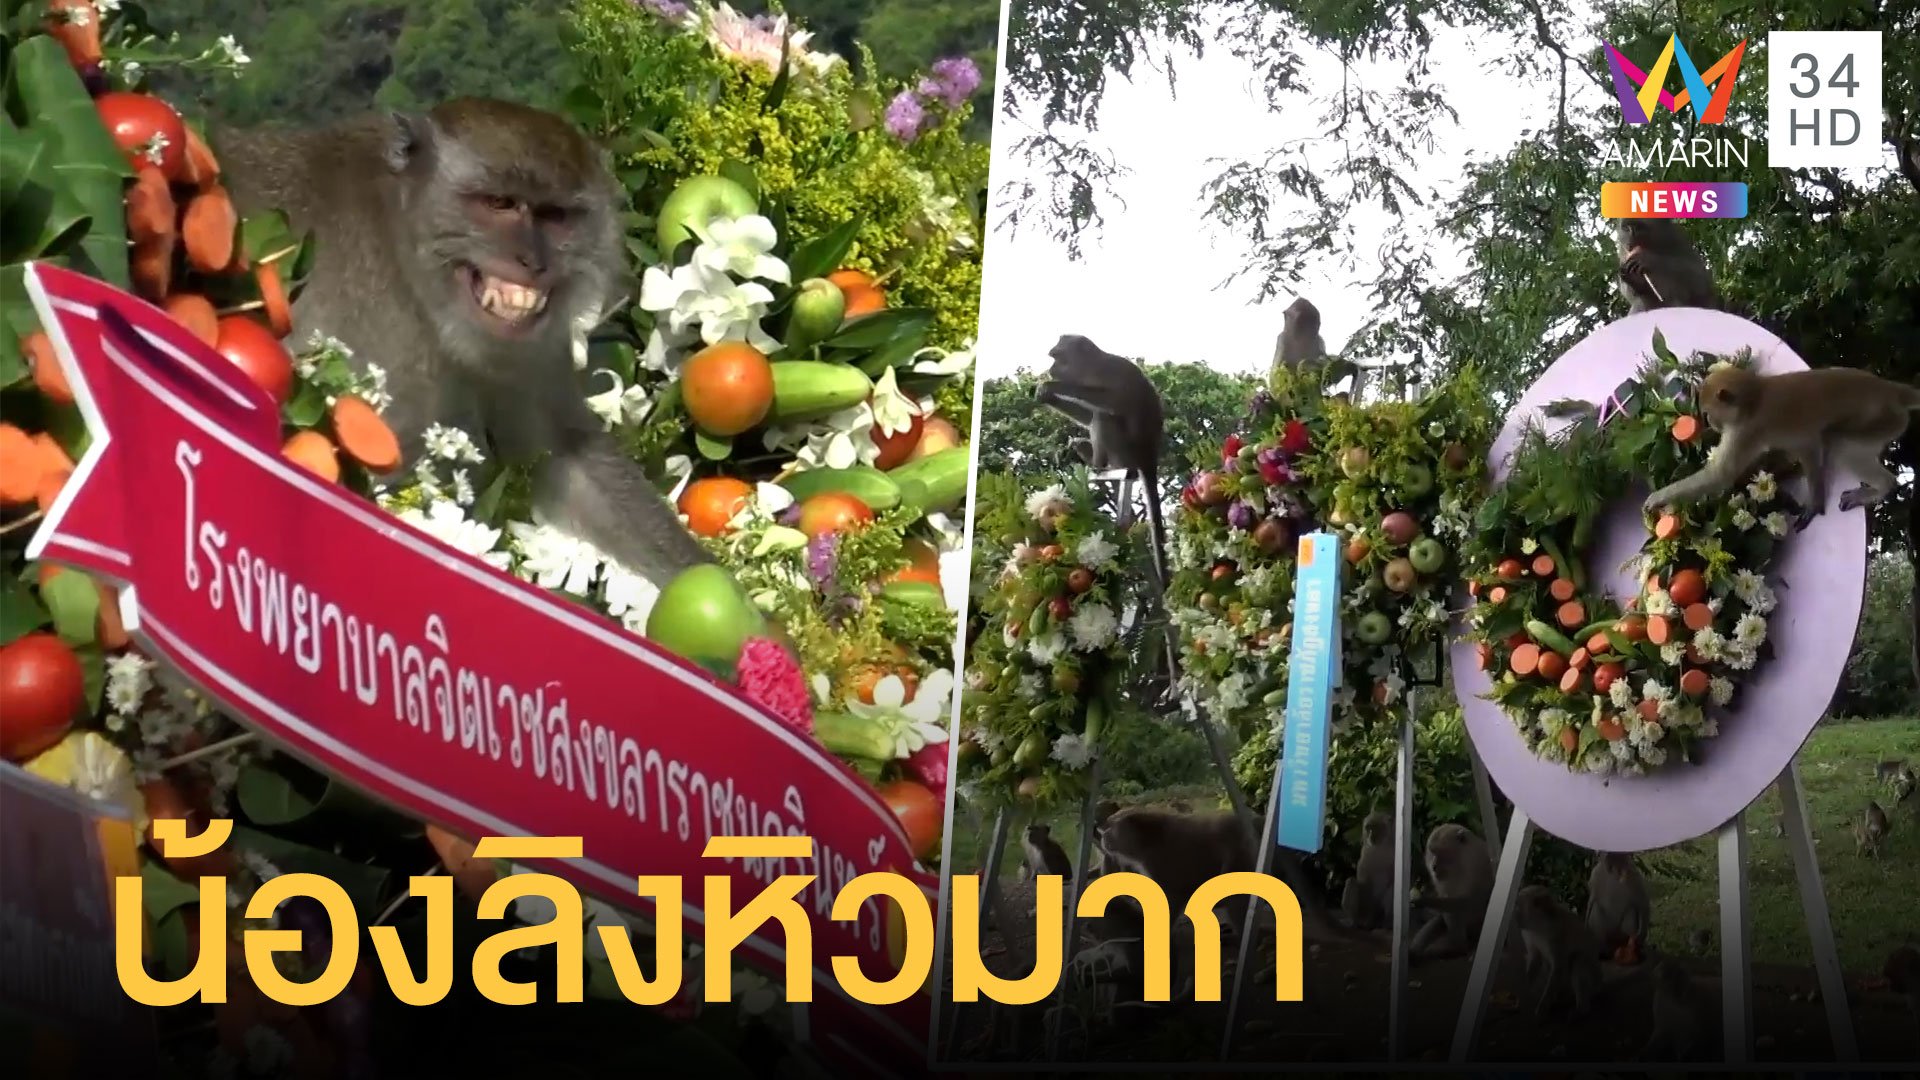 ฝูงลิงเป็นร้อยบุกกินพวงมาลาผลไม้ | ข่าวอรุณอมรินทร์ | 9 เม.ย. 64 | AMARIN TVHD34